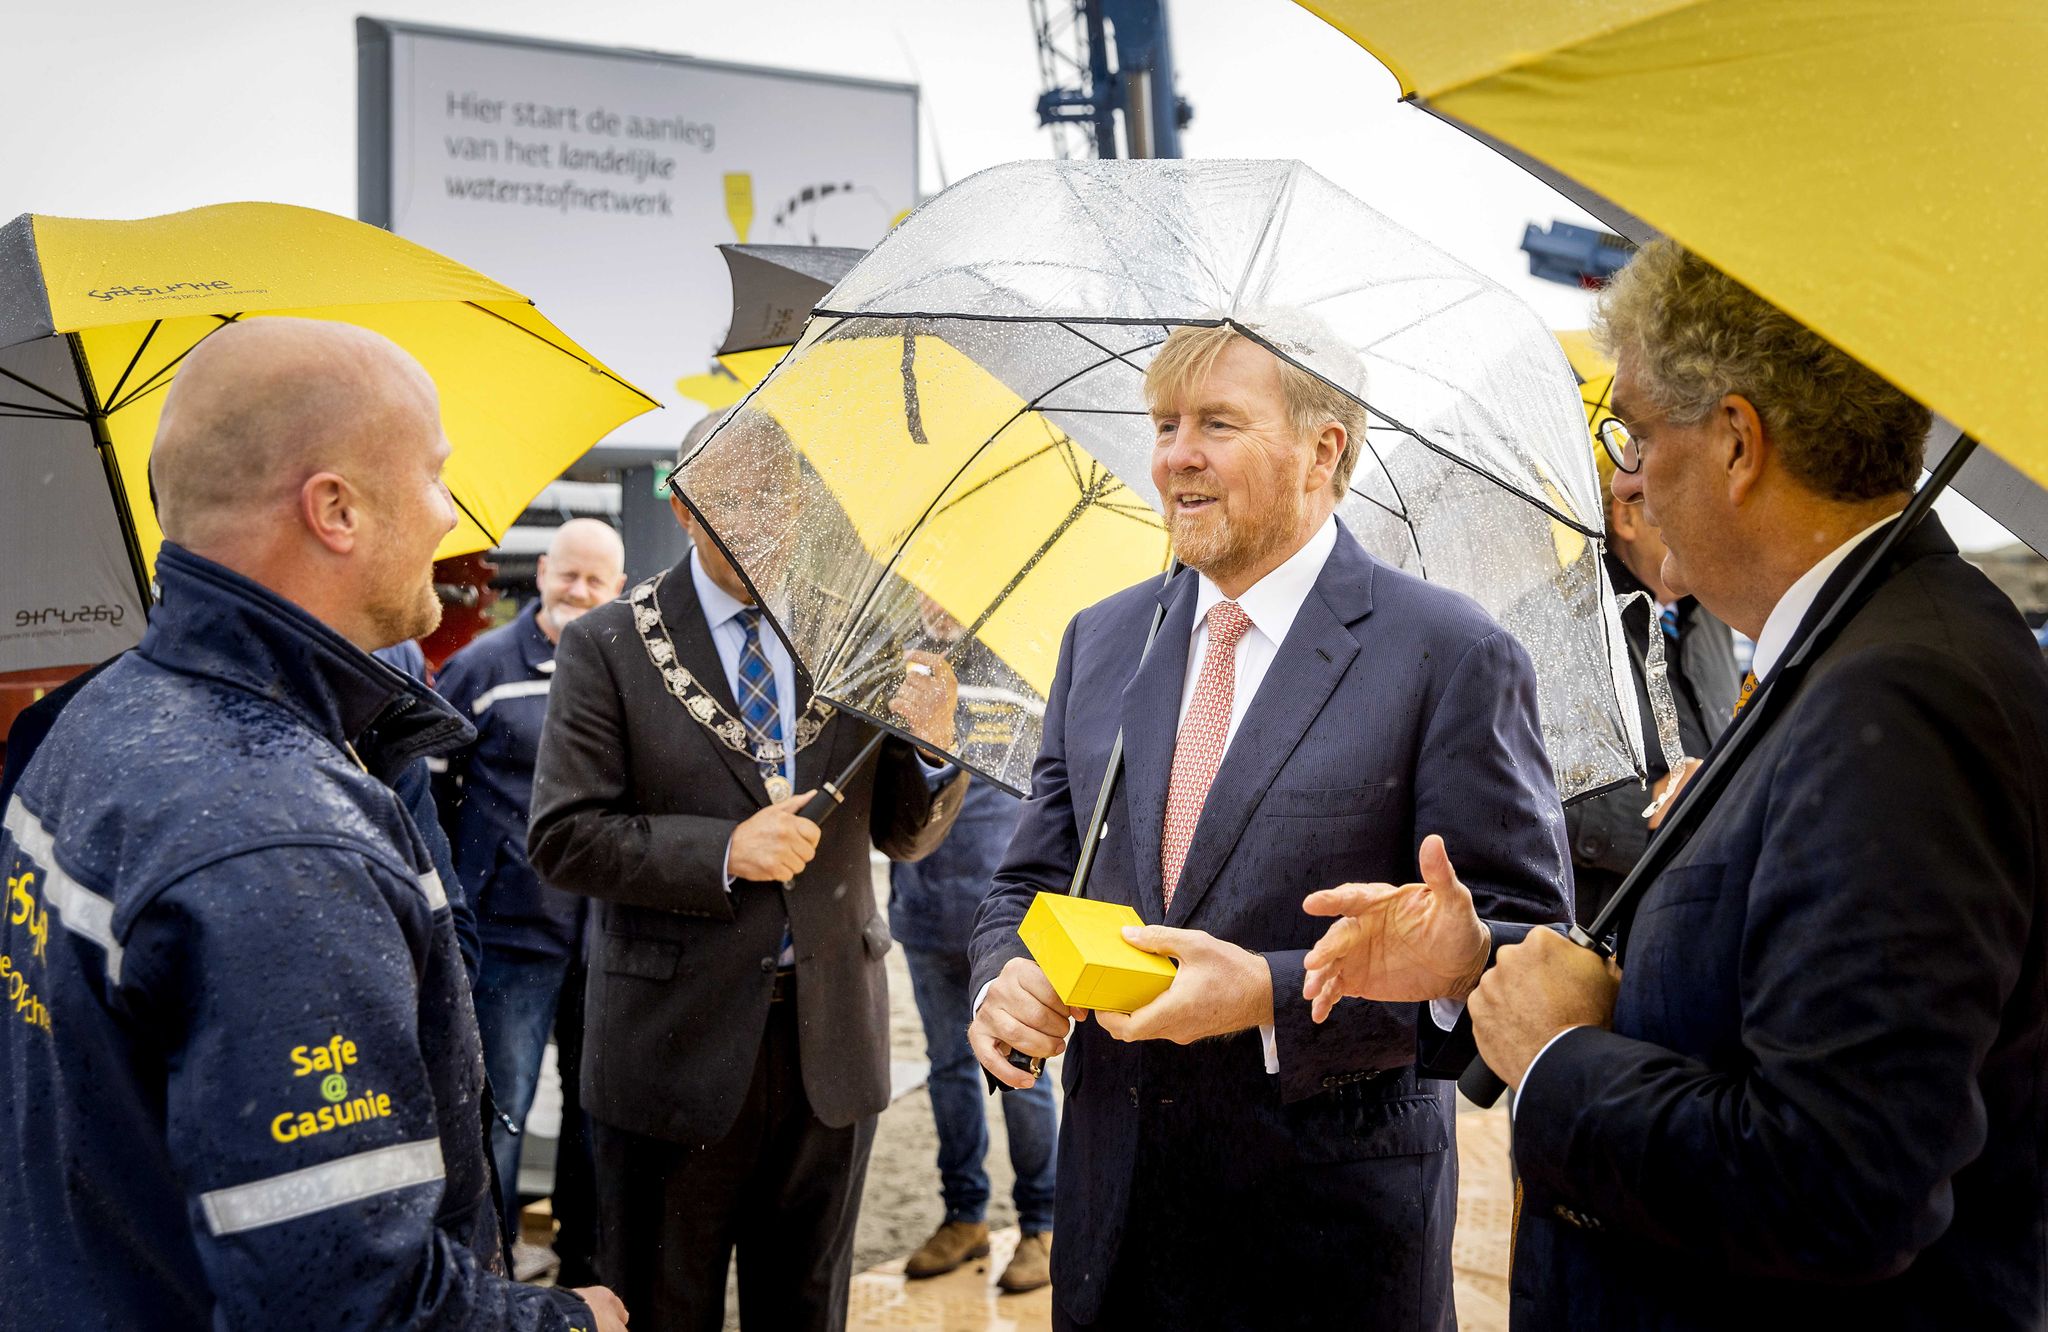 Der niederländische König Willem-Alexander (M) hat im Hafen von Rotterdam das Startzeichen für den Bau eines internationalen Wasserstoffnetzwerkes gegeben.